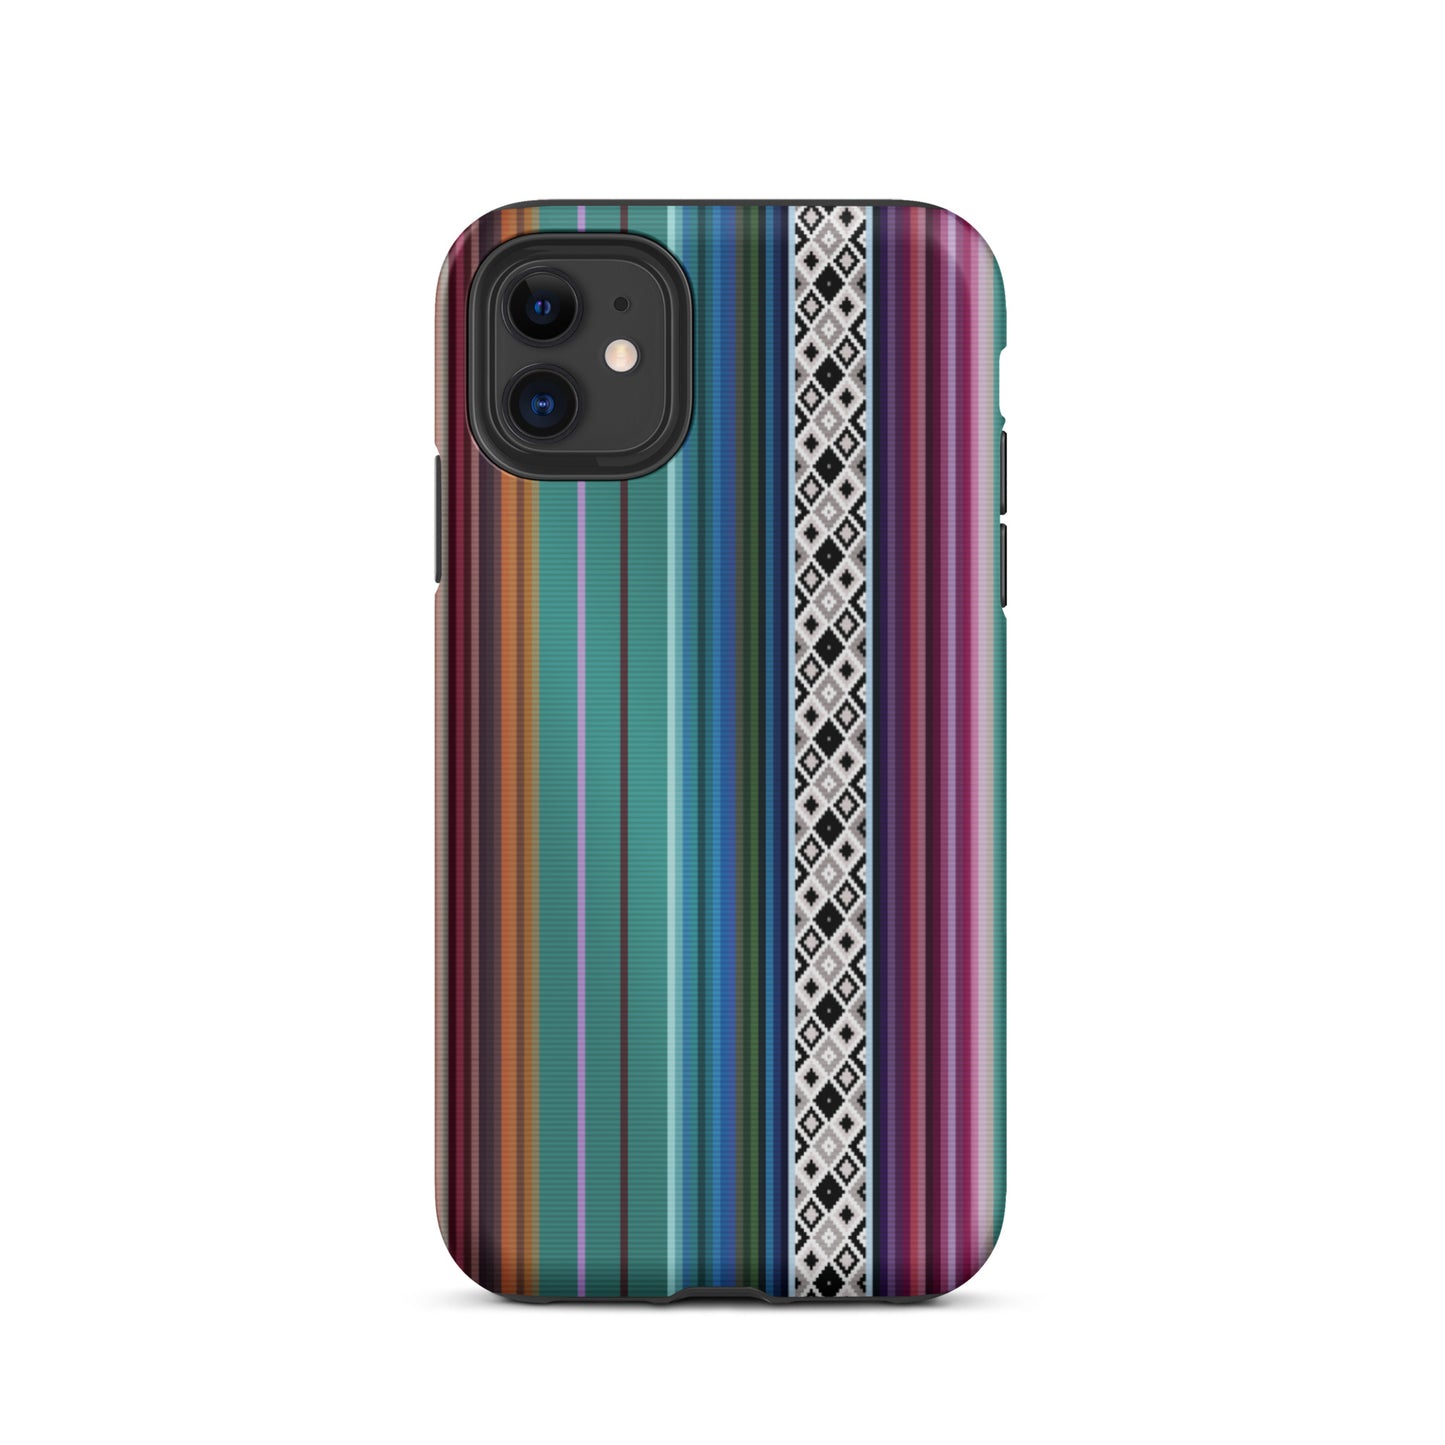 Mexican Aztec Tough iPhone 11 case